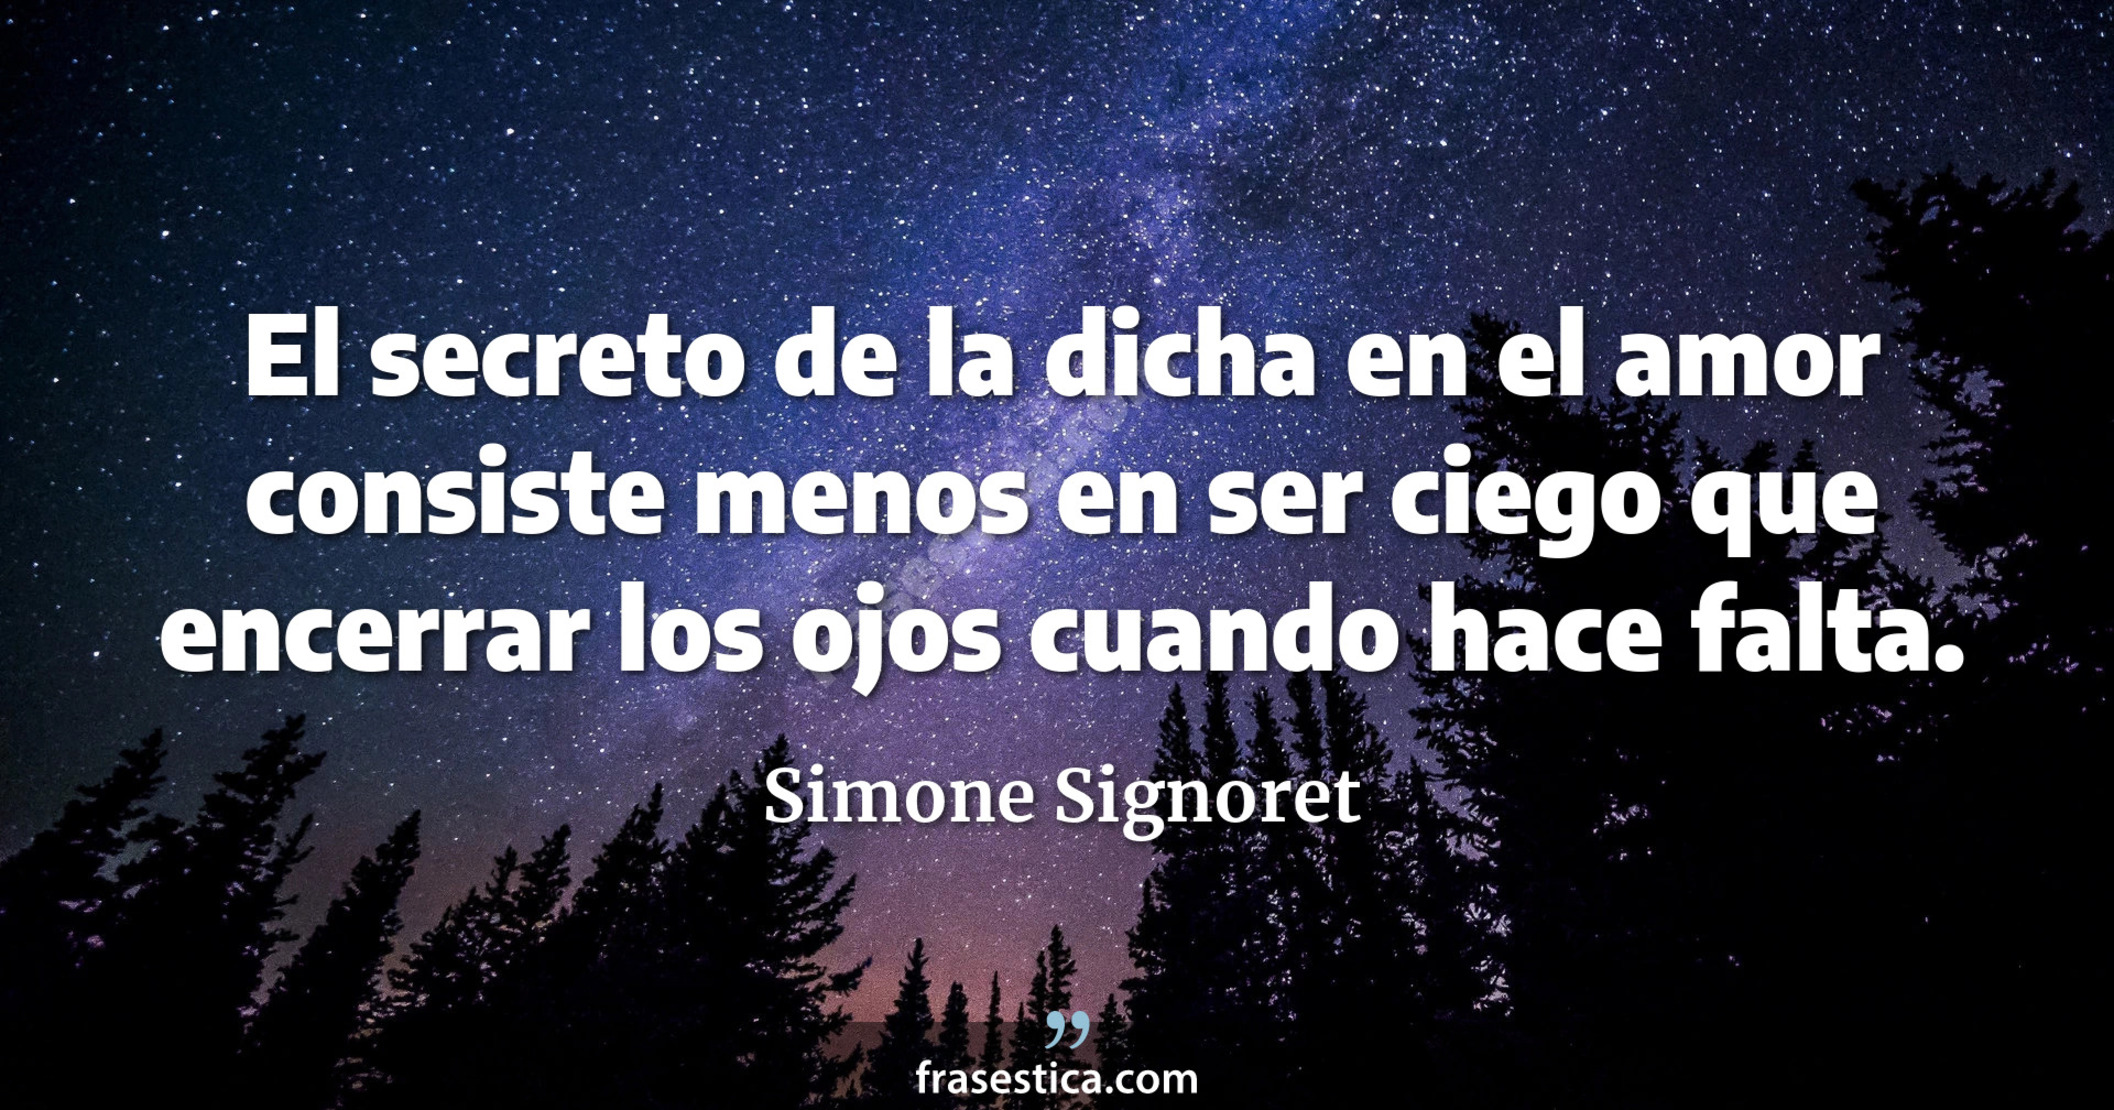 El secreto de la dicha en el amor consiste menos en ser ciego que encerrar los ojos cuando hace falta. - Simone Signoret